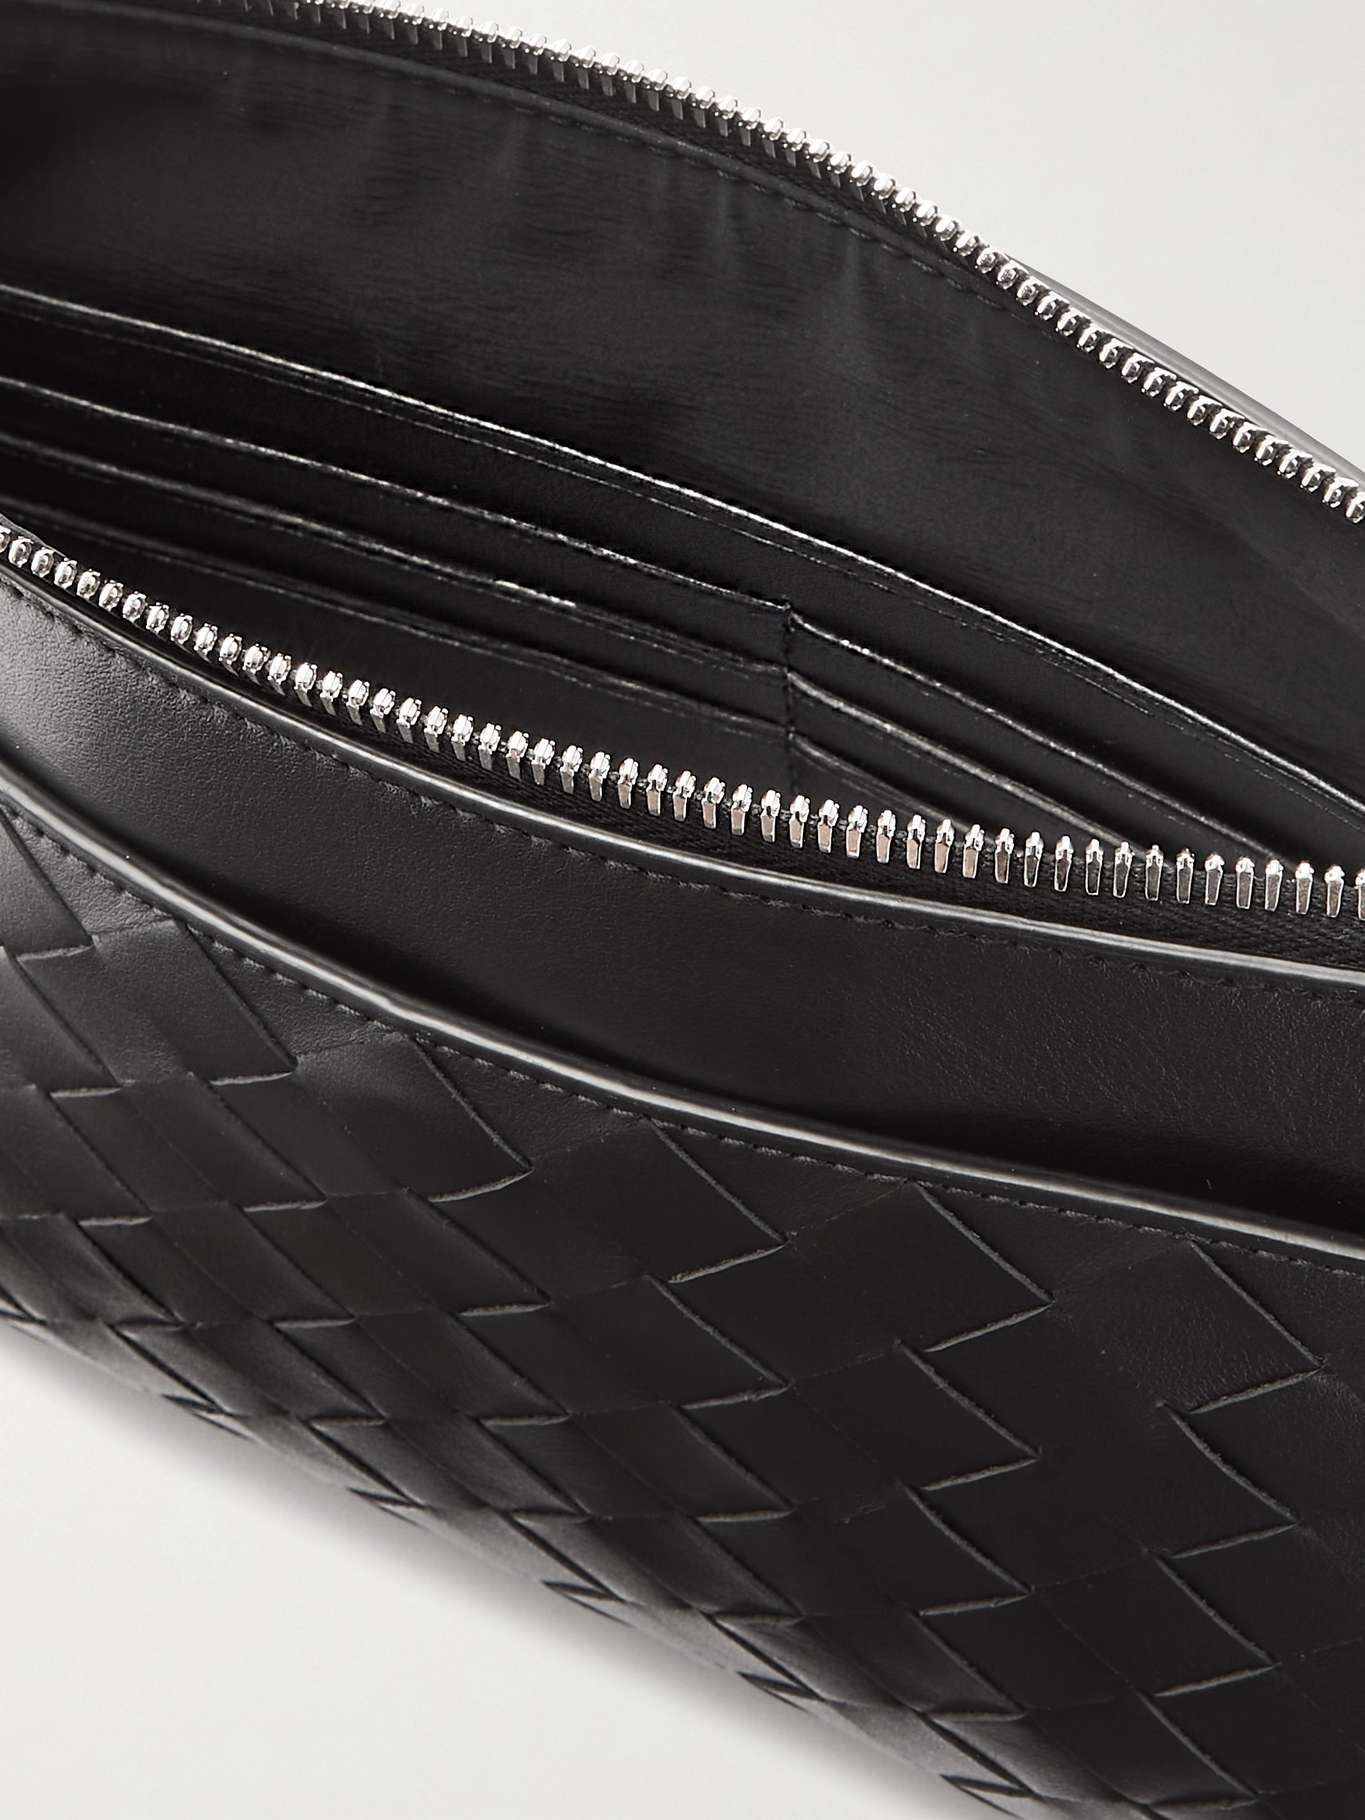 Prism intrecciato leather pouch - 5